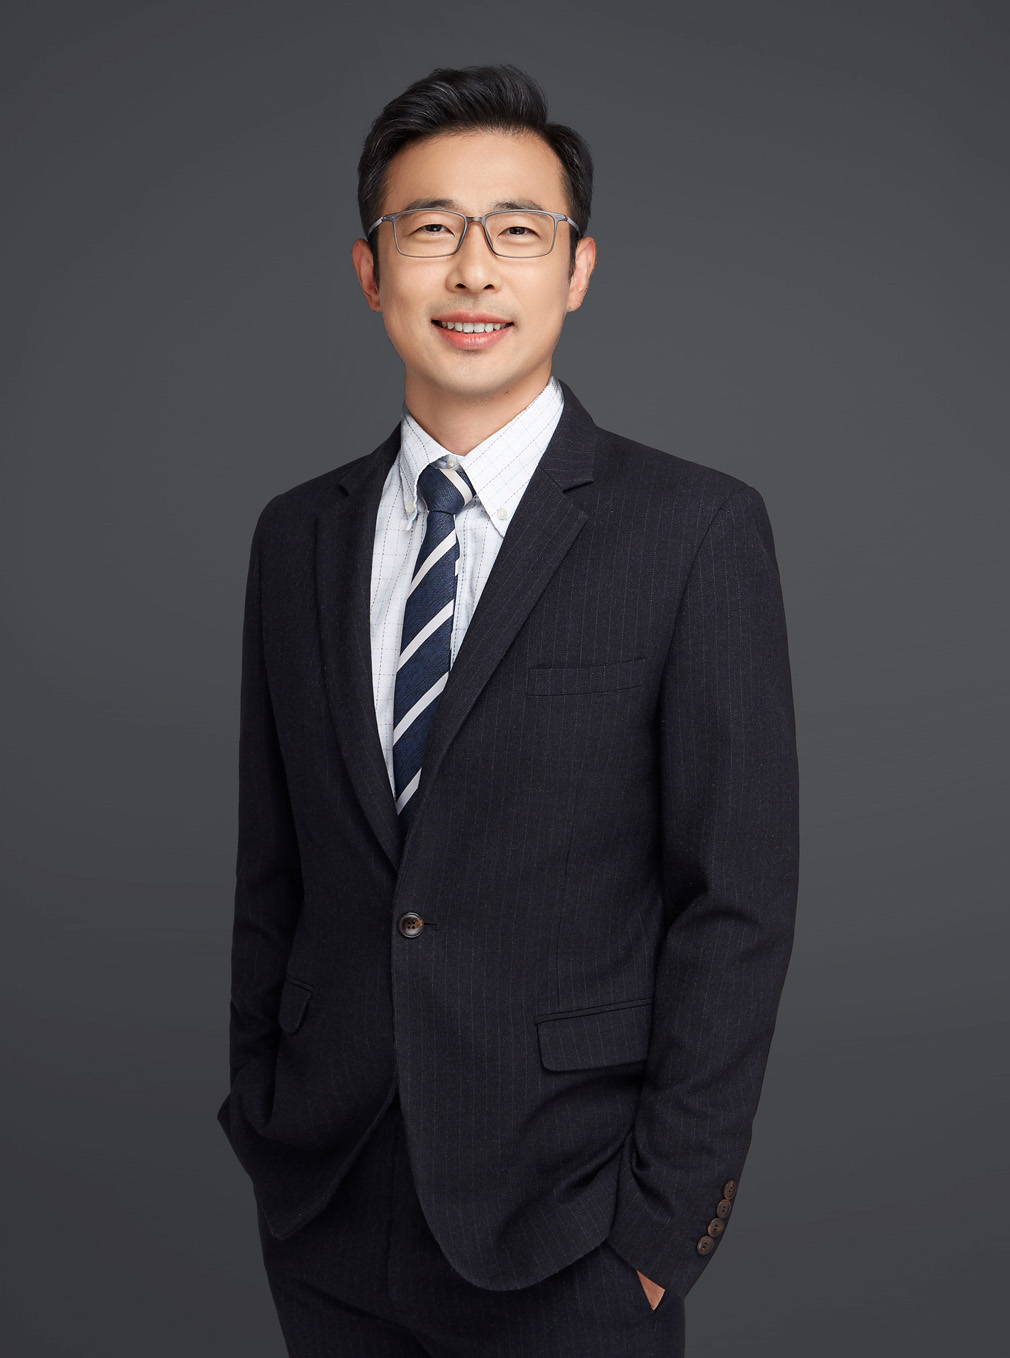 Mr Zhang Peng